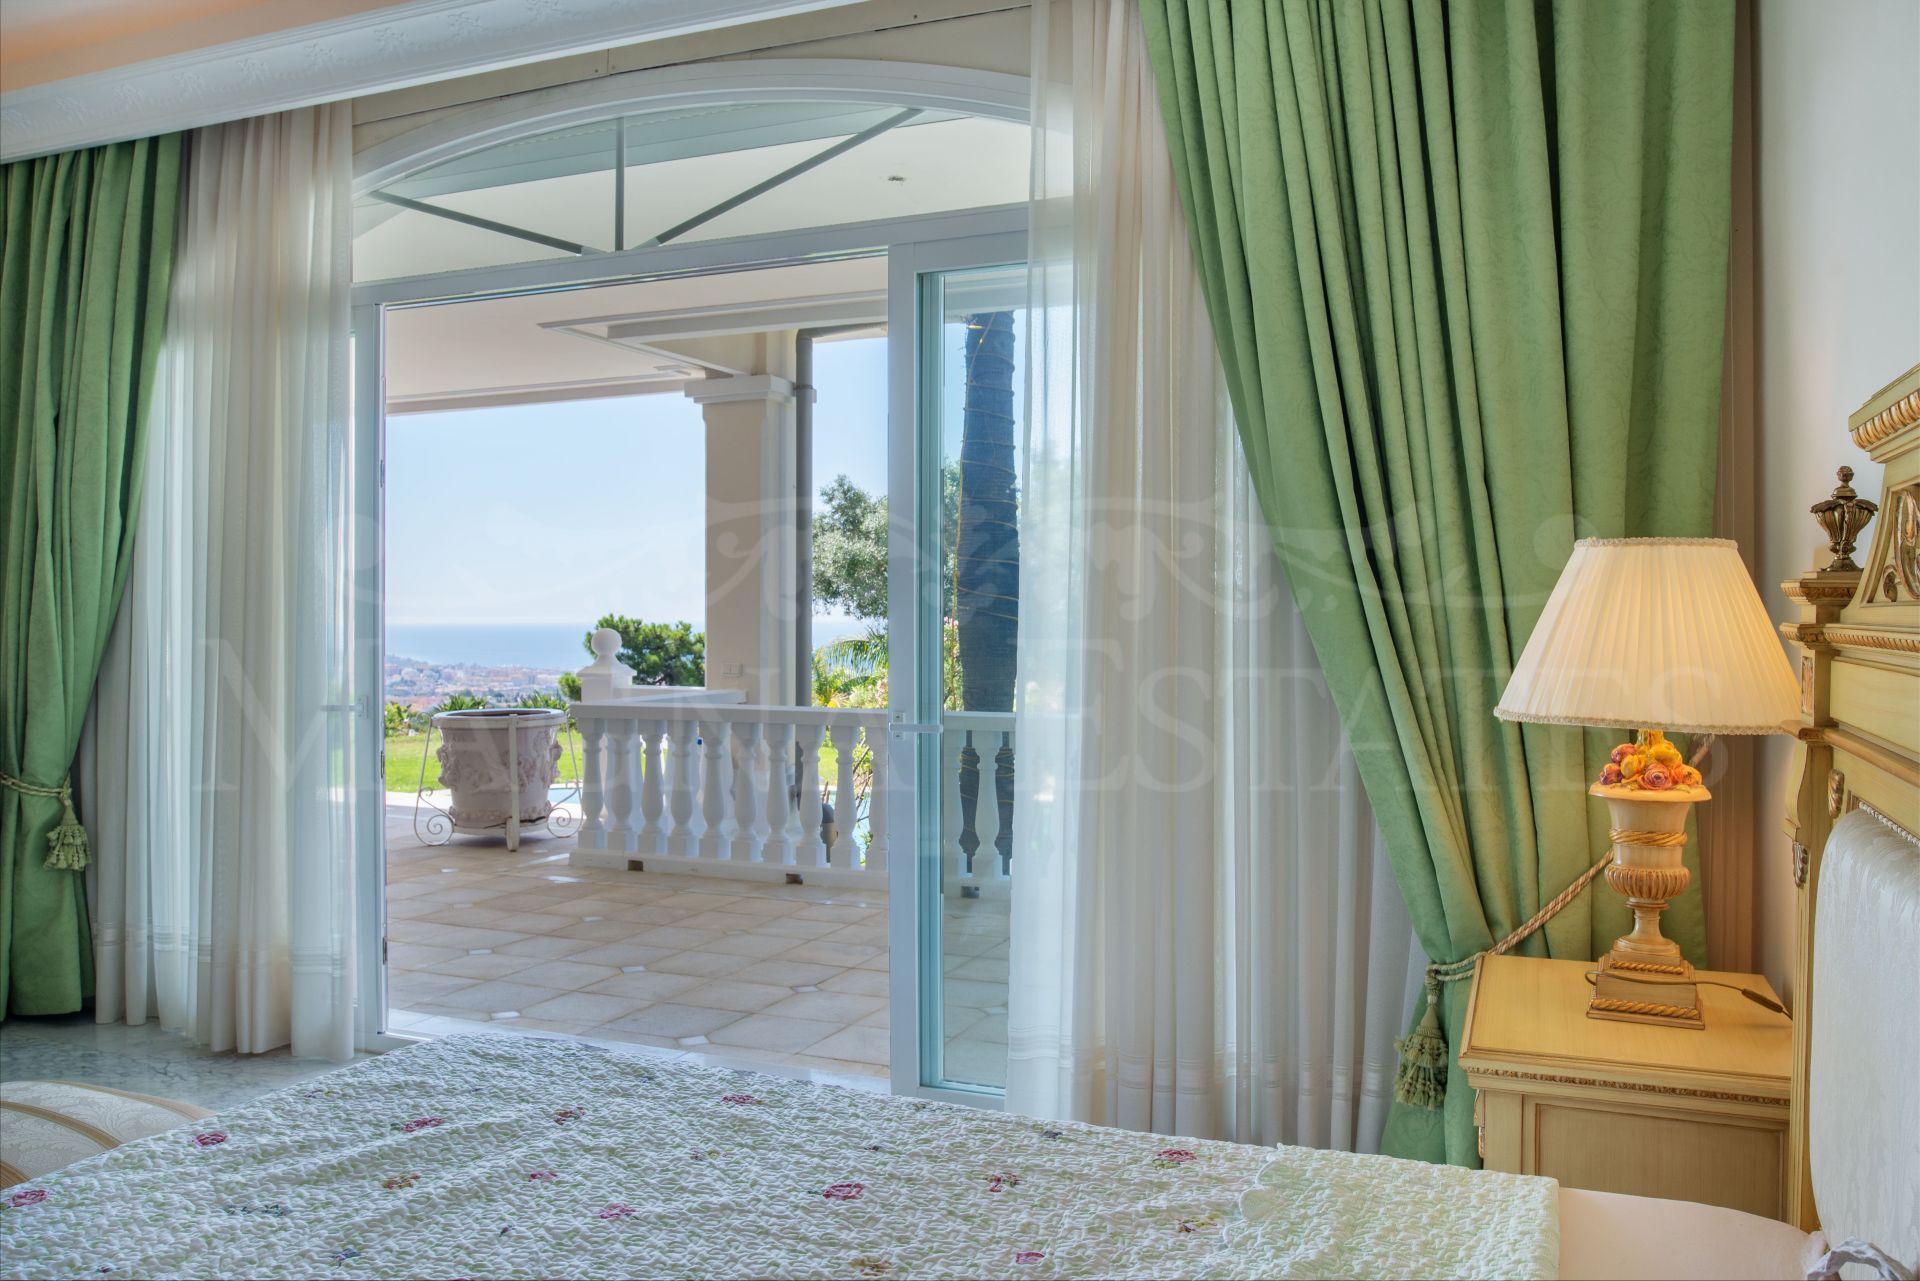 Excepcional oportunidad de inversión en esta villa en Sierra Blanca, Marbella